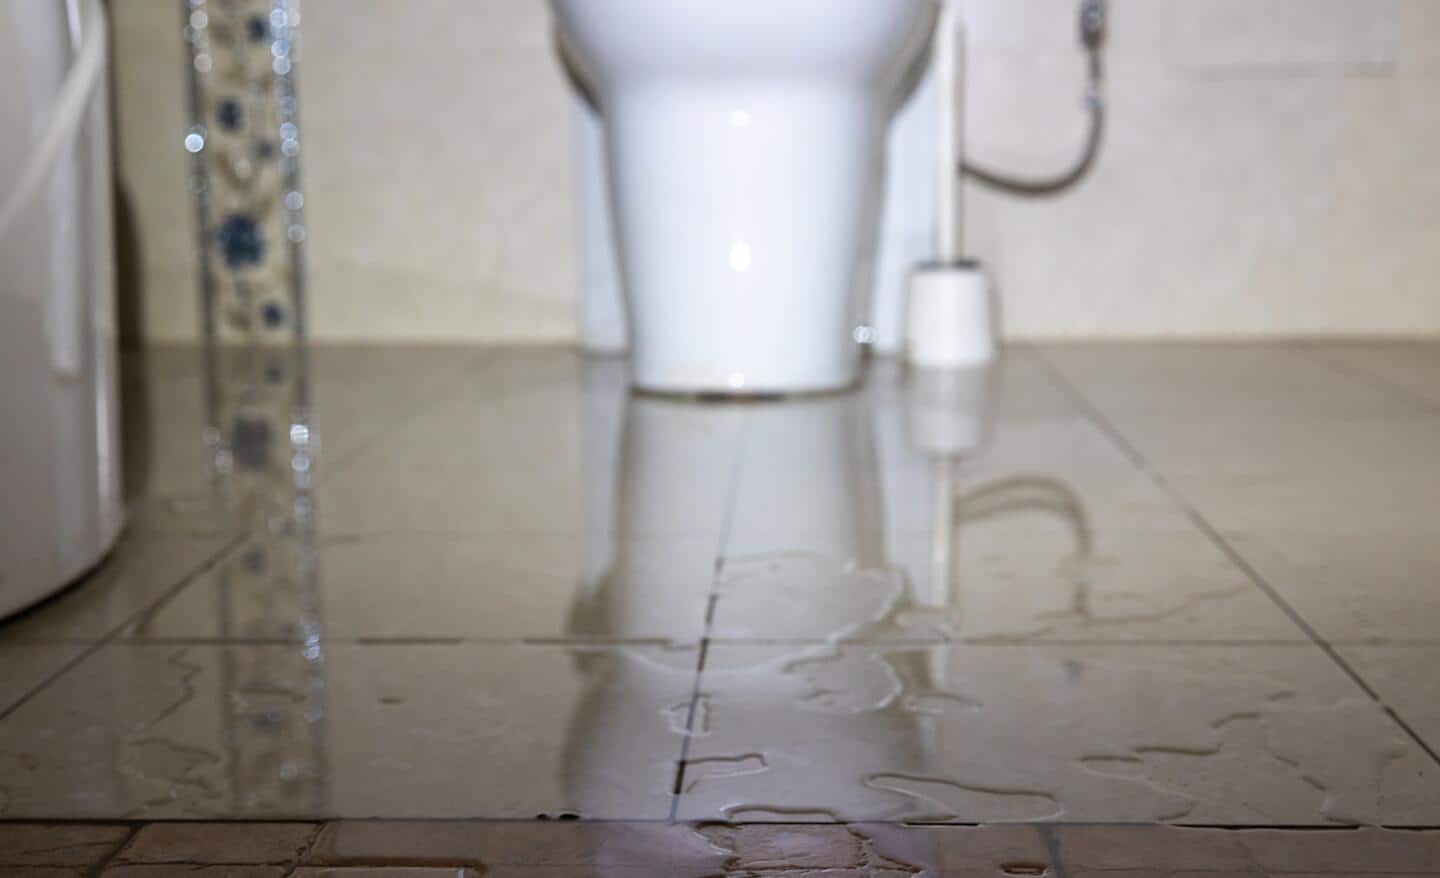 Water on a bathroom floor.